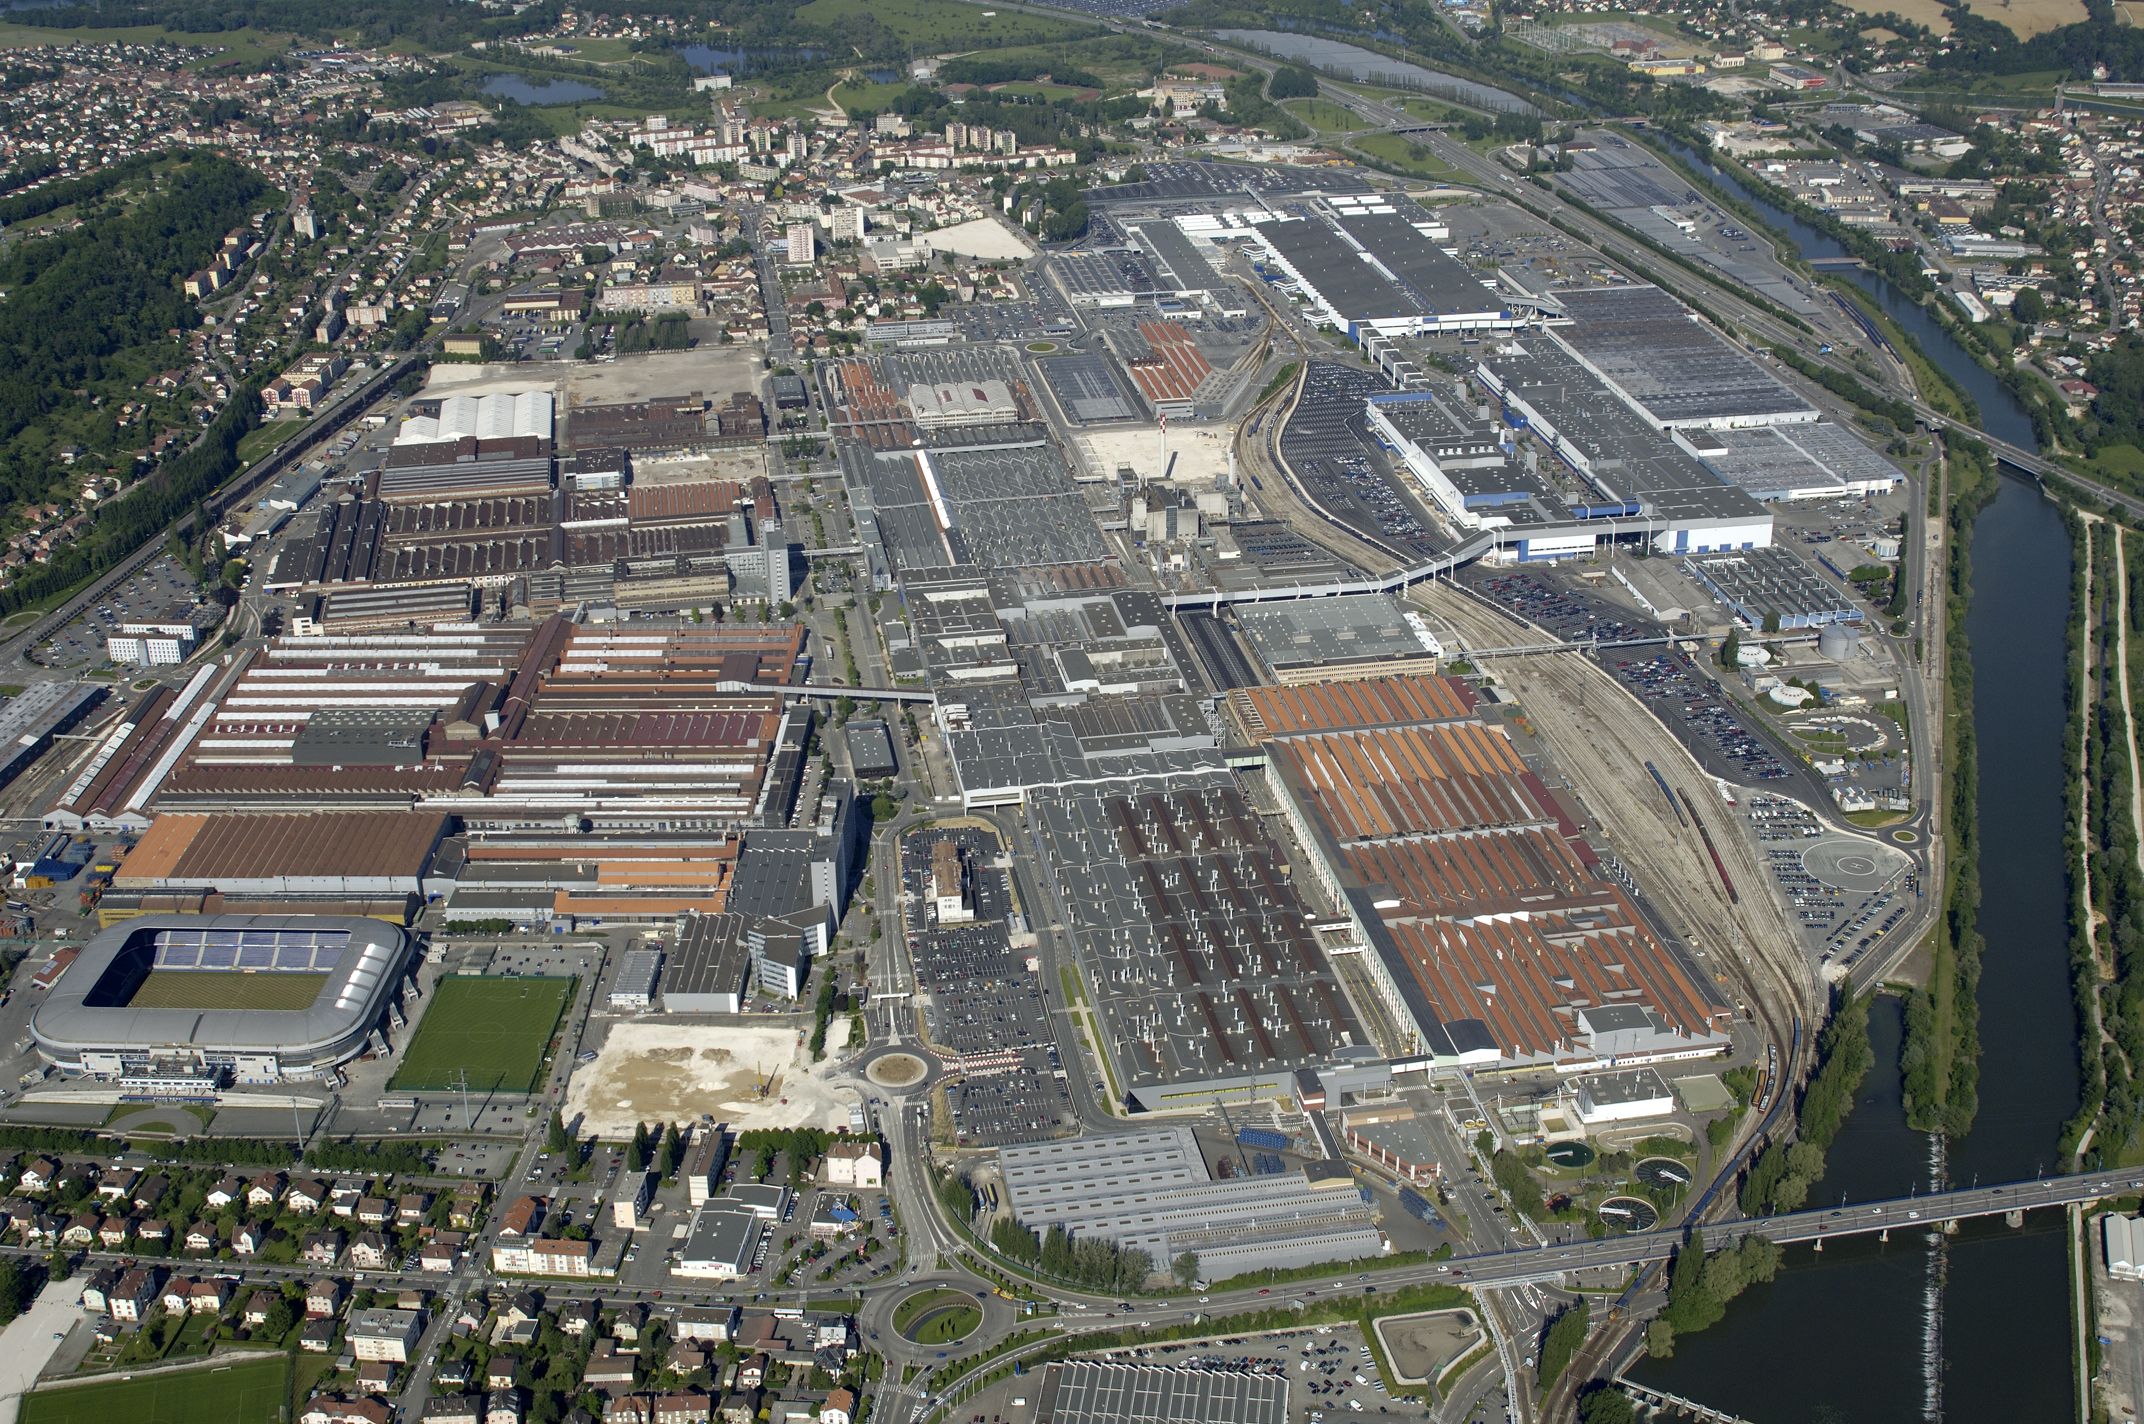 groupe-psa-to-invest-eur-200-million-into-the-sochaux-plant